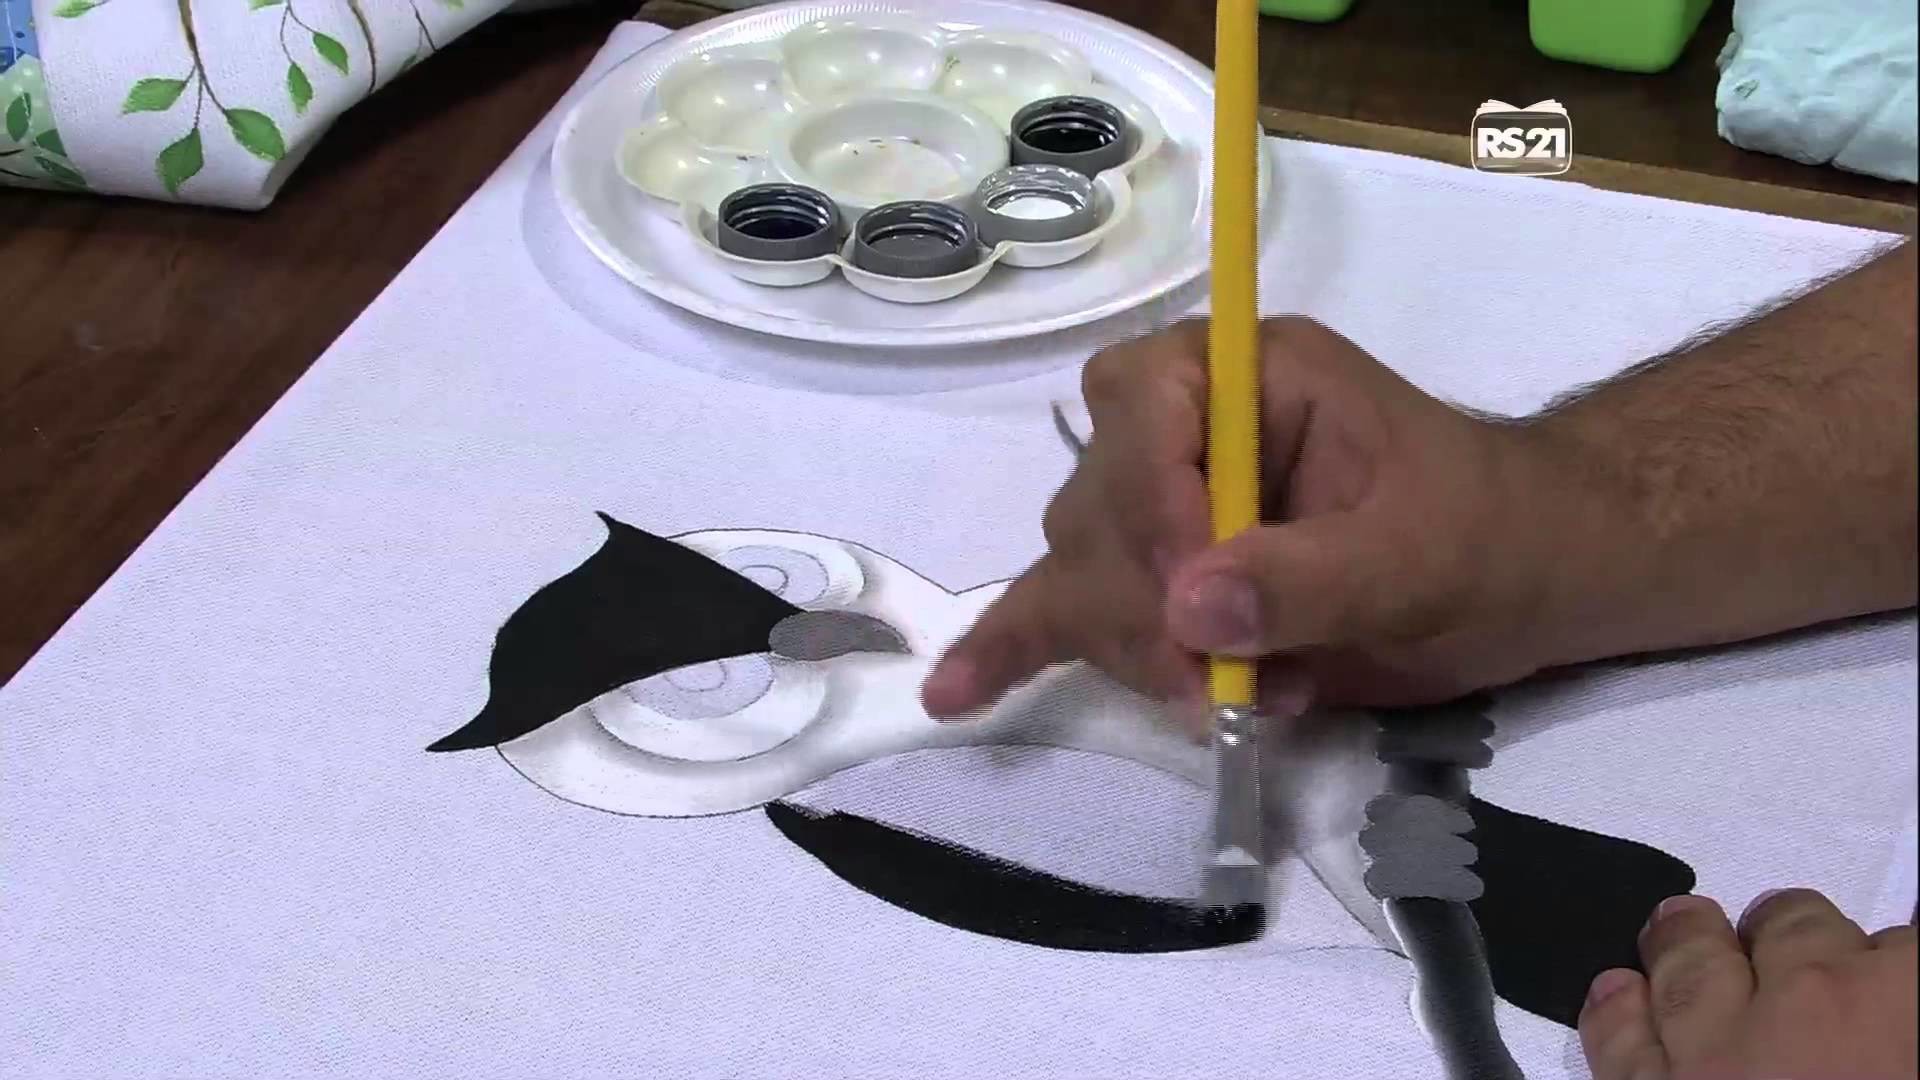 Mulher.com 29.04.2013 Luciano Menezes - Pintura em tecido coruja  Parte 1.2